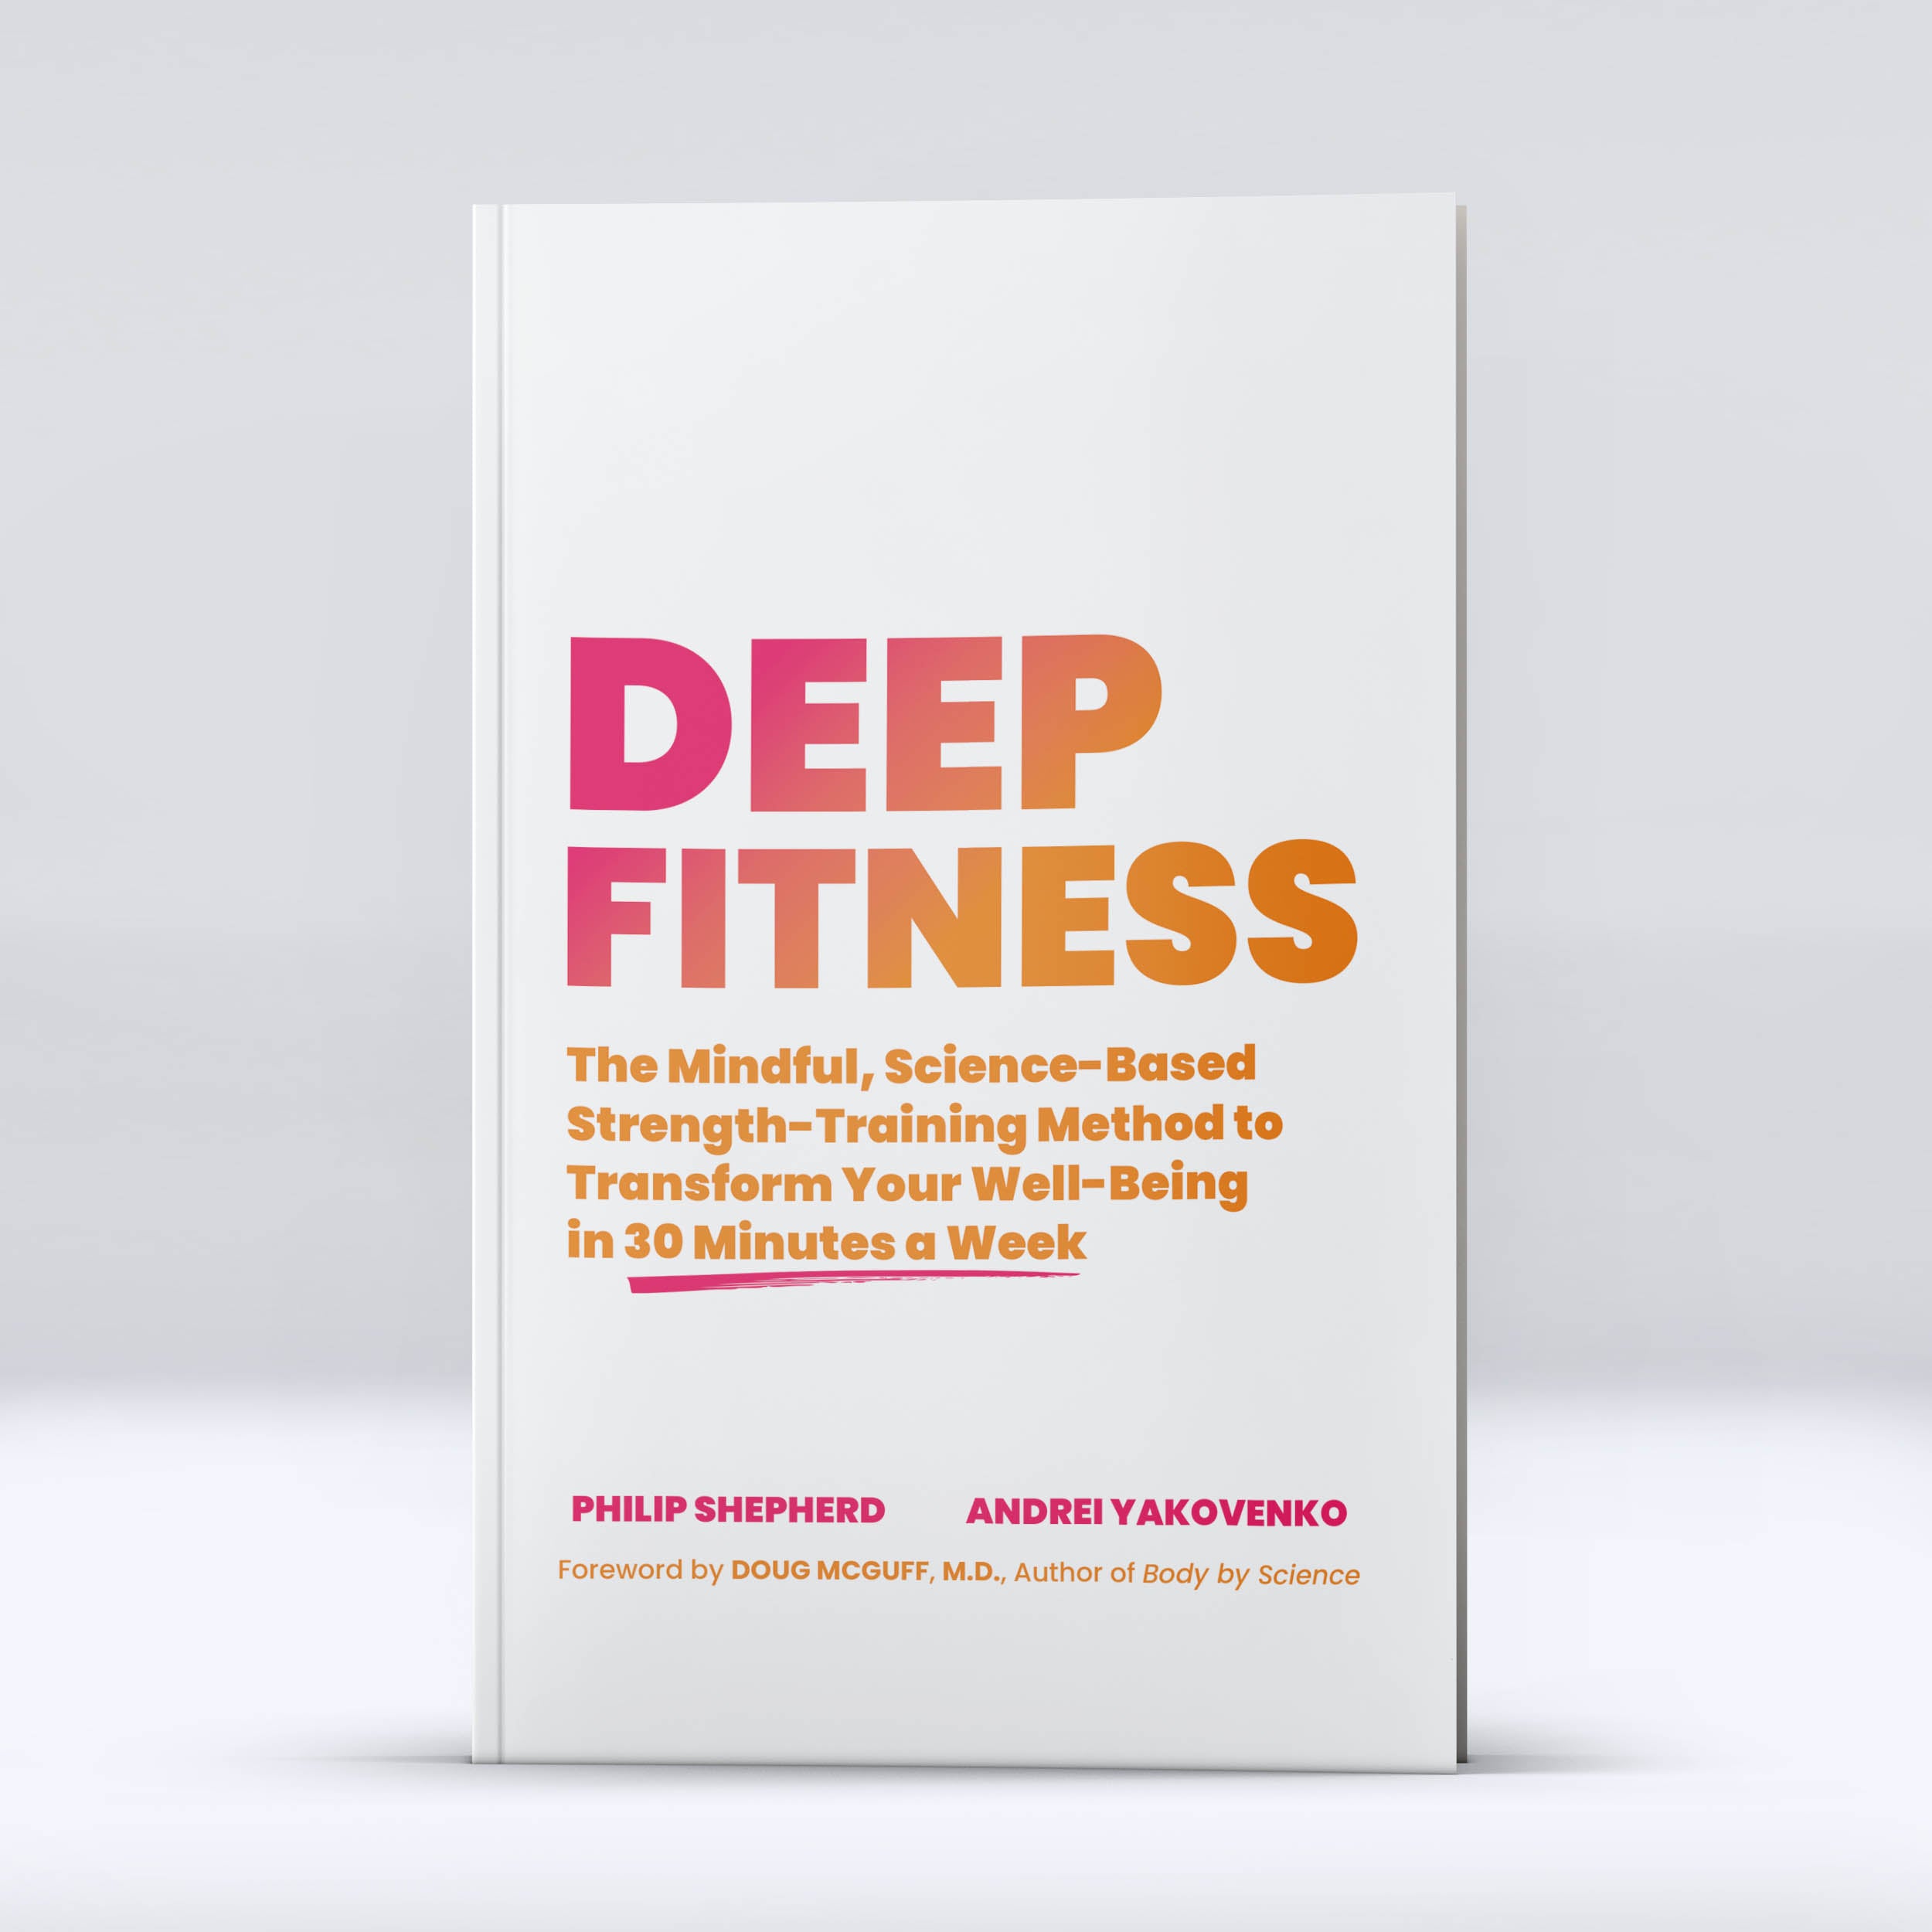 Deep Fitness by Philip Shepherd and Andrei Yakovenko